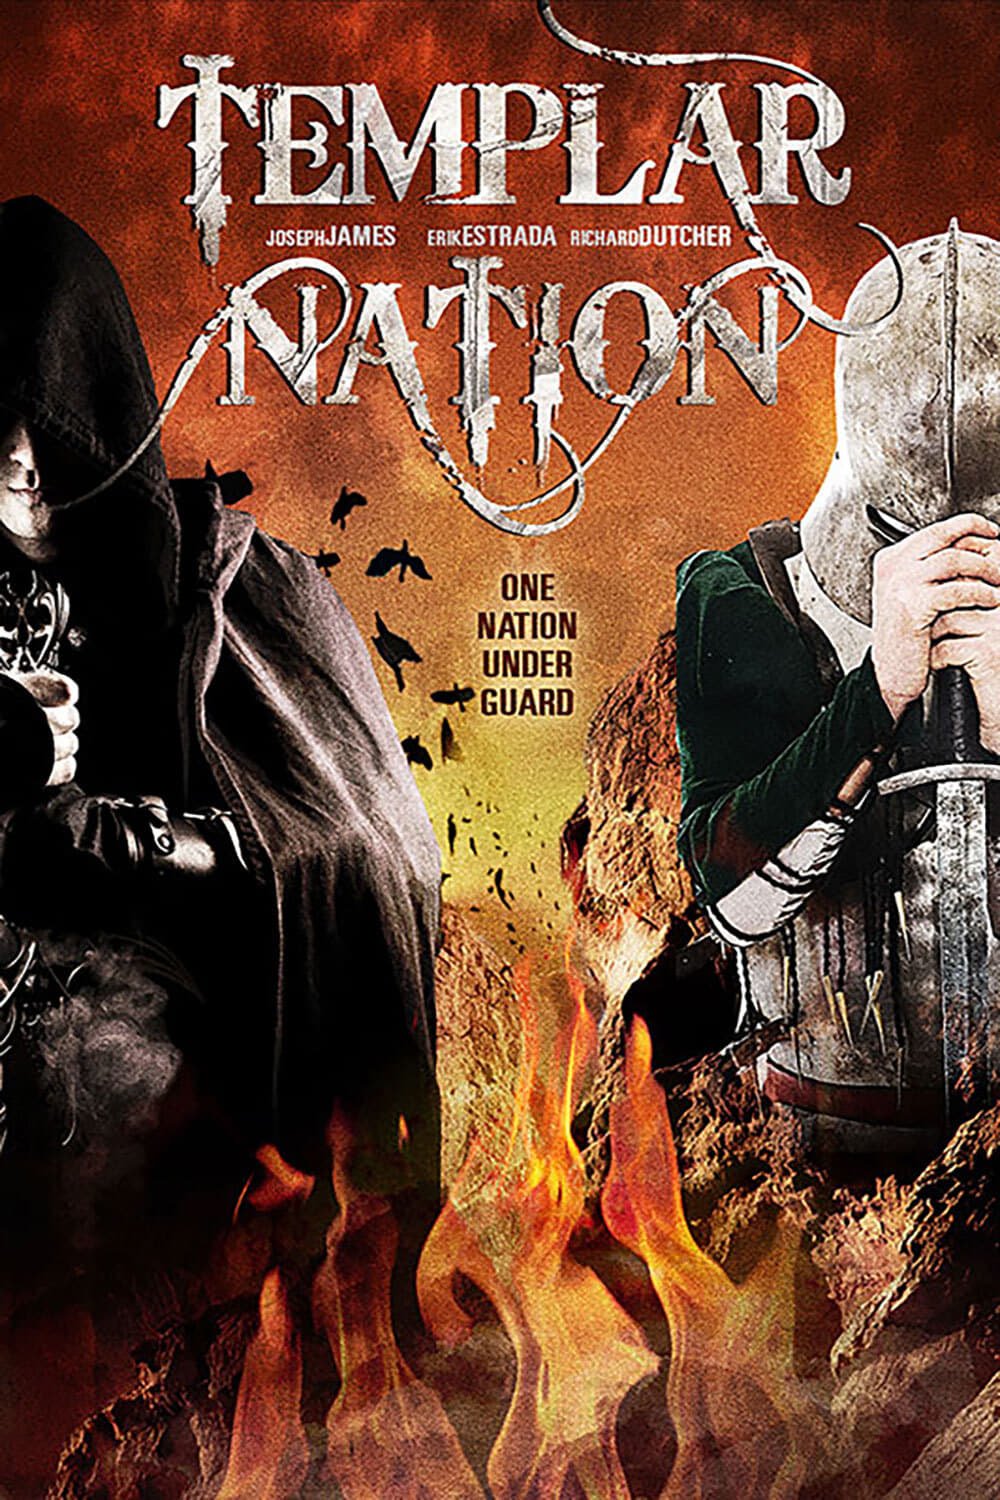 Templar Nation (2013)